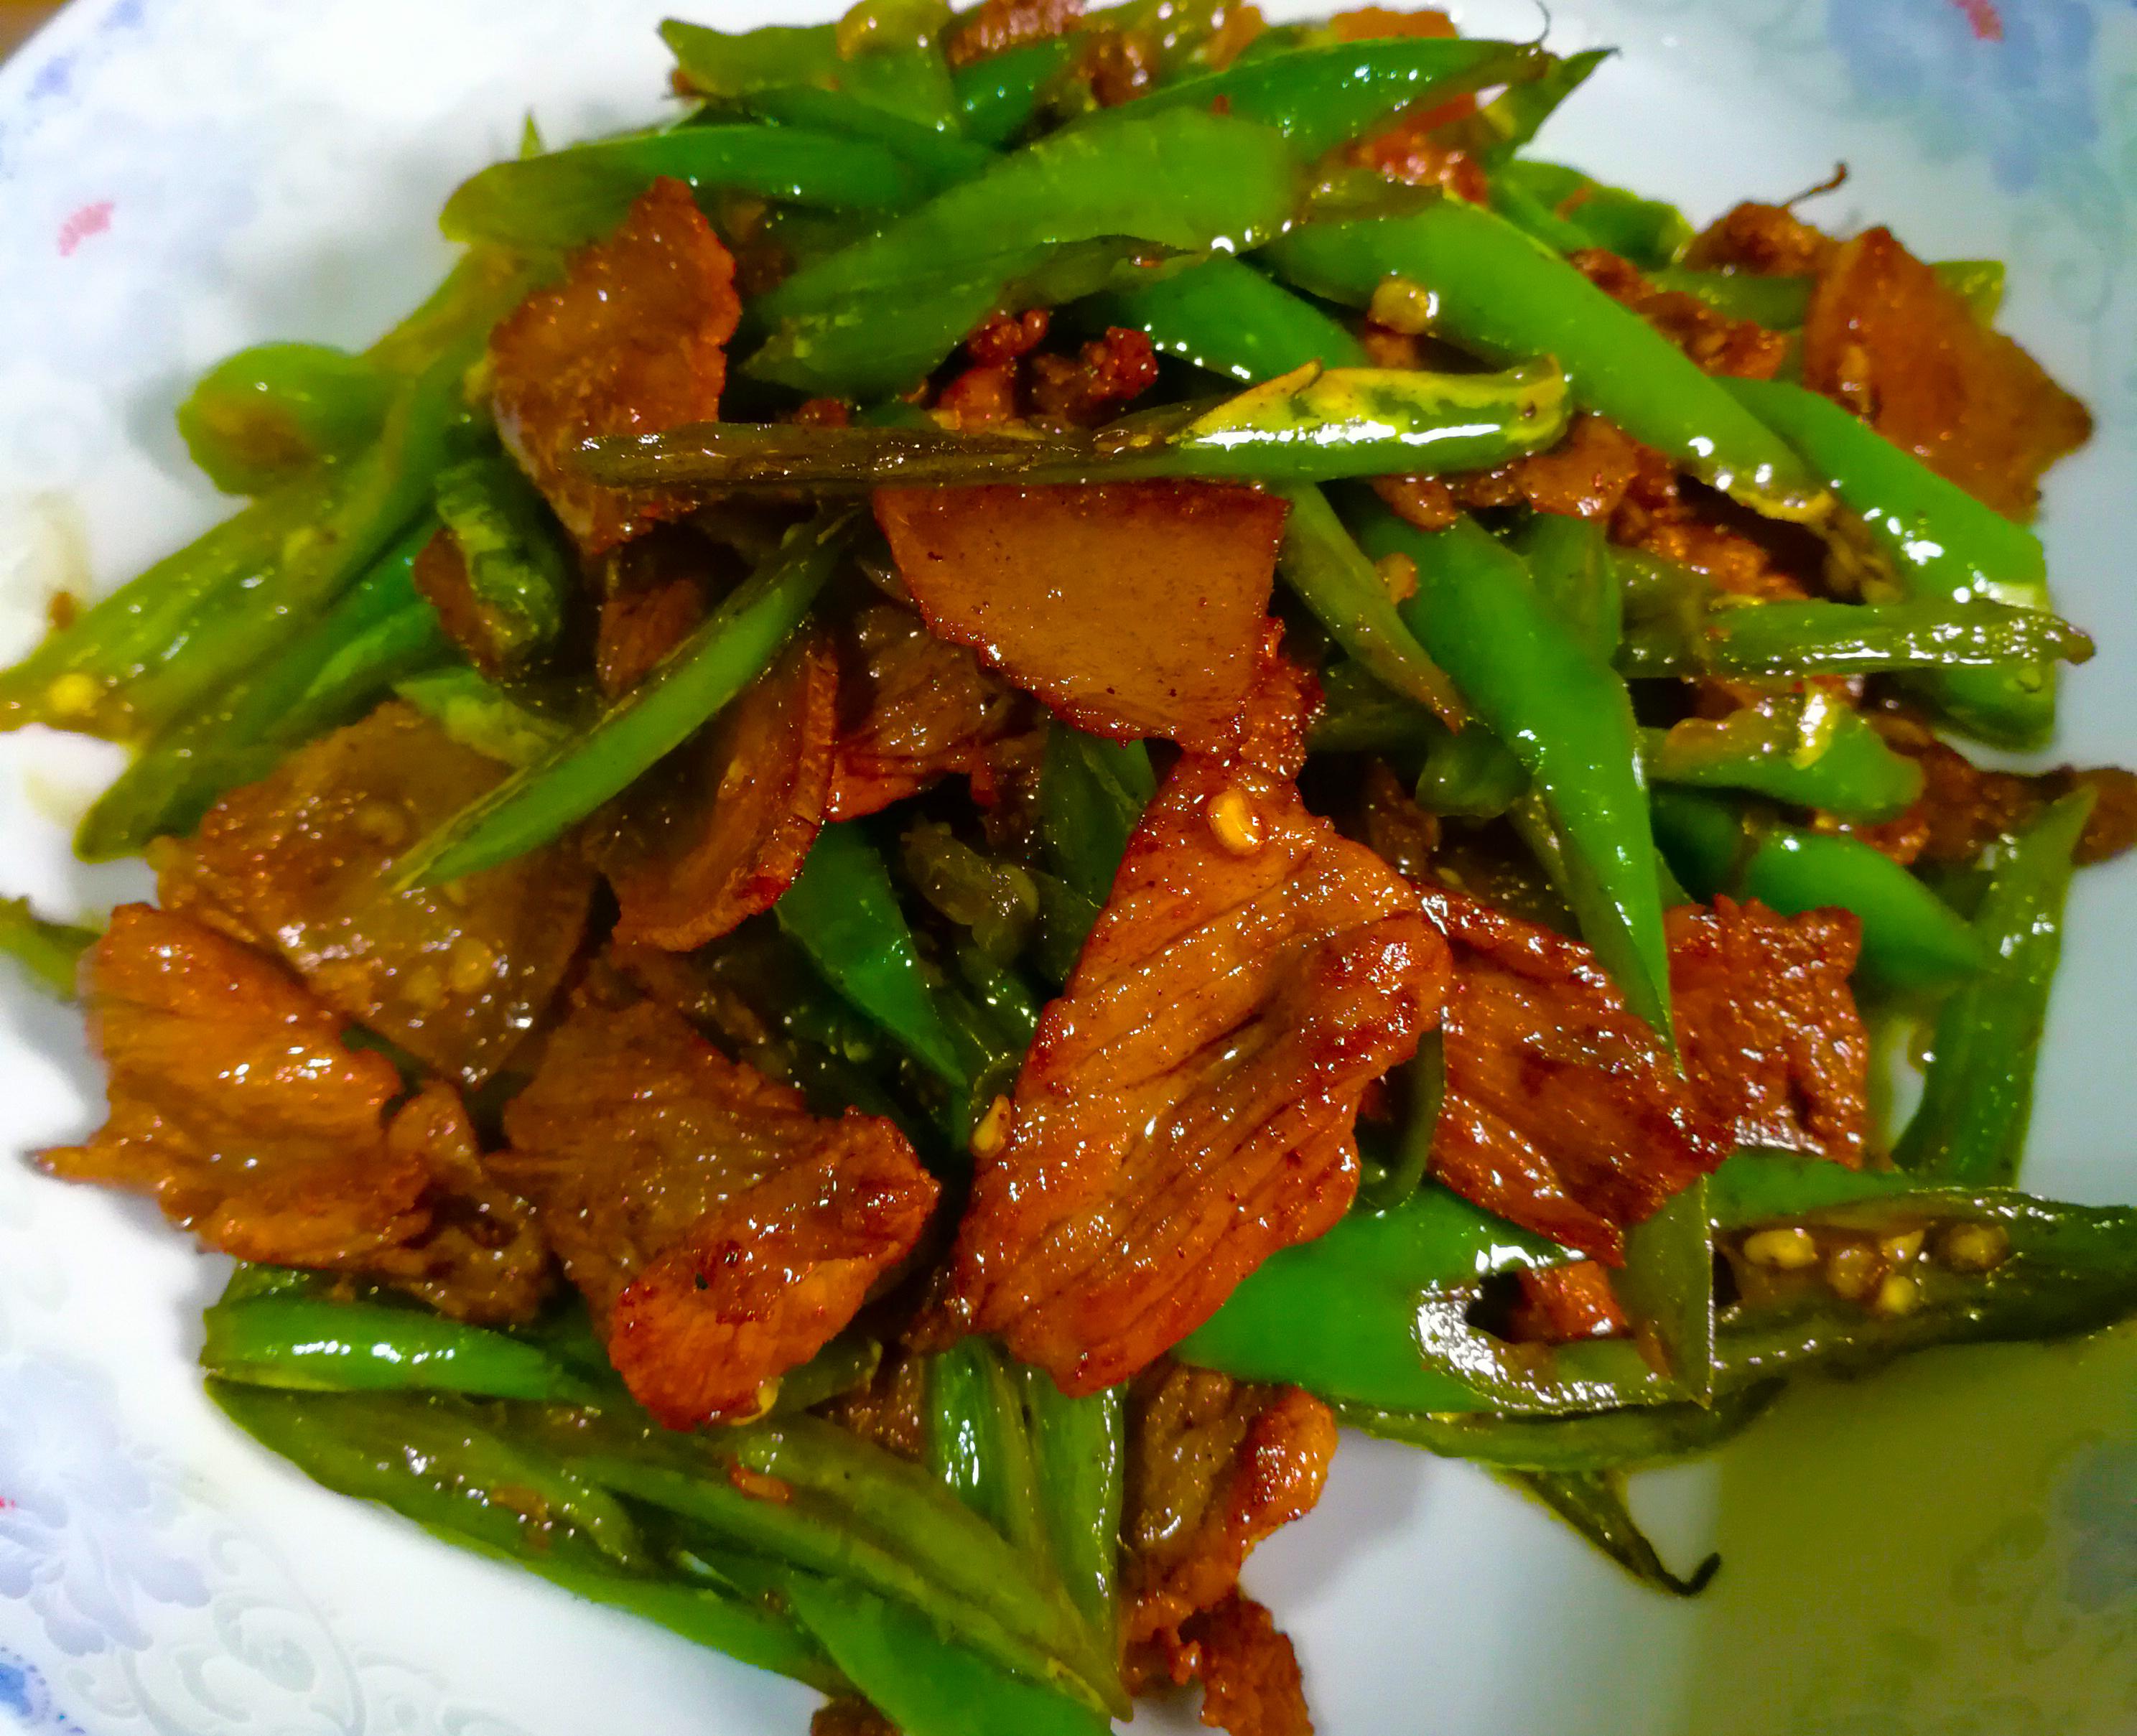 很怀念儿时的味道, 辣椒炒肉,是湘菜里的一道经典家常菜,每家每户都会